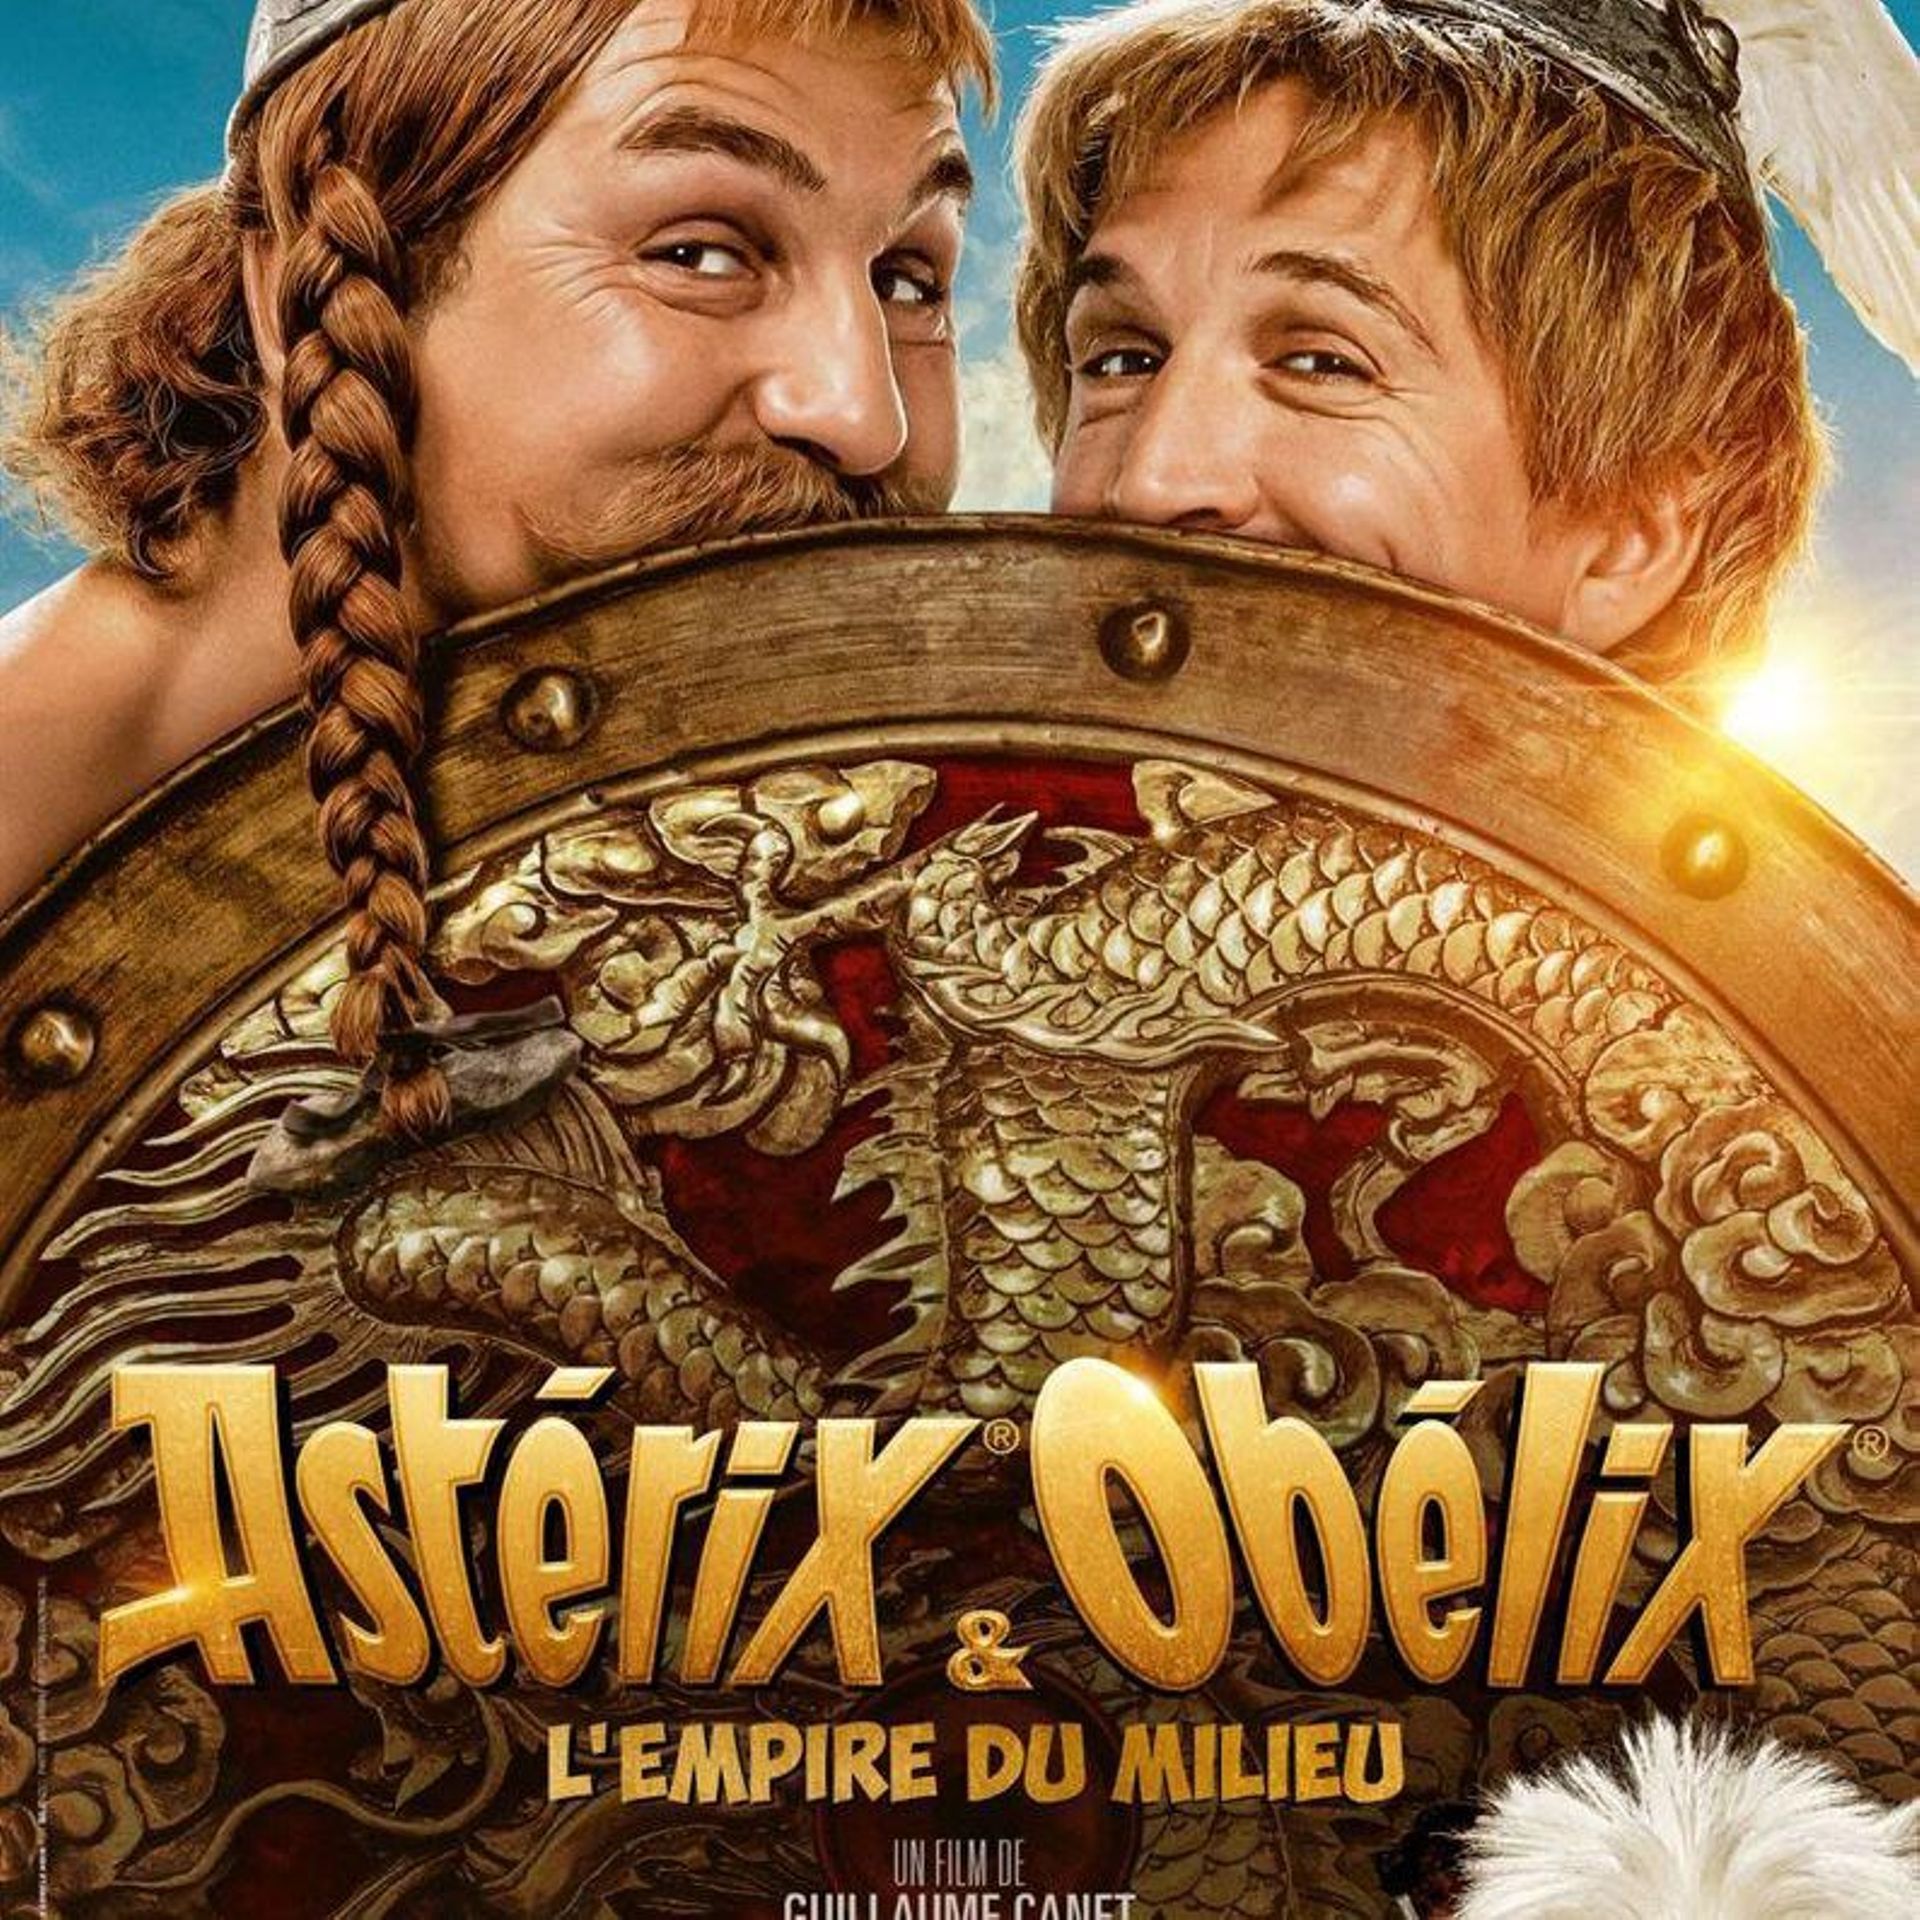 Astérix & Obélix L'Empire du Milieu : tous les personnages du film